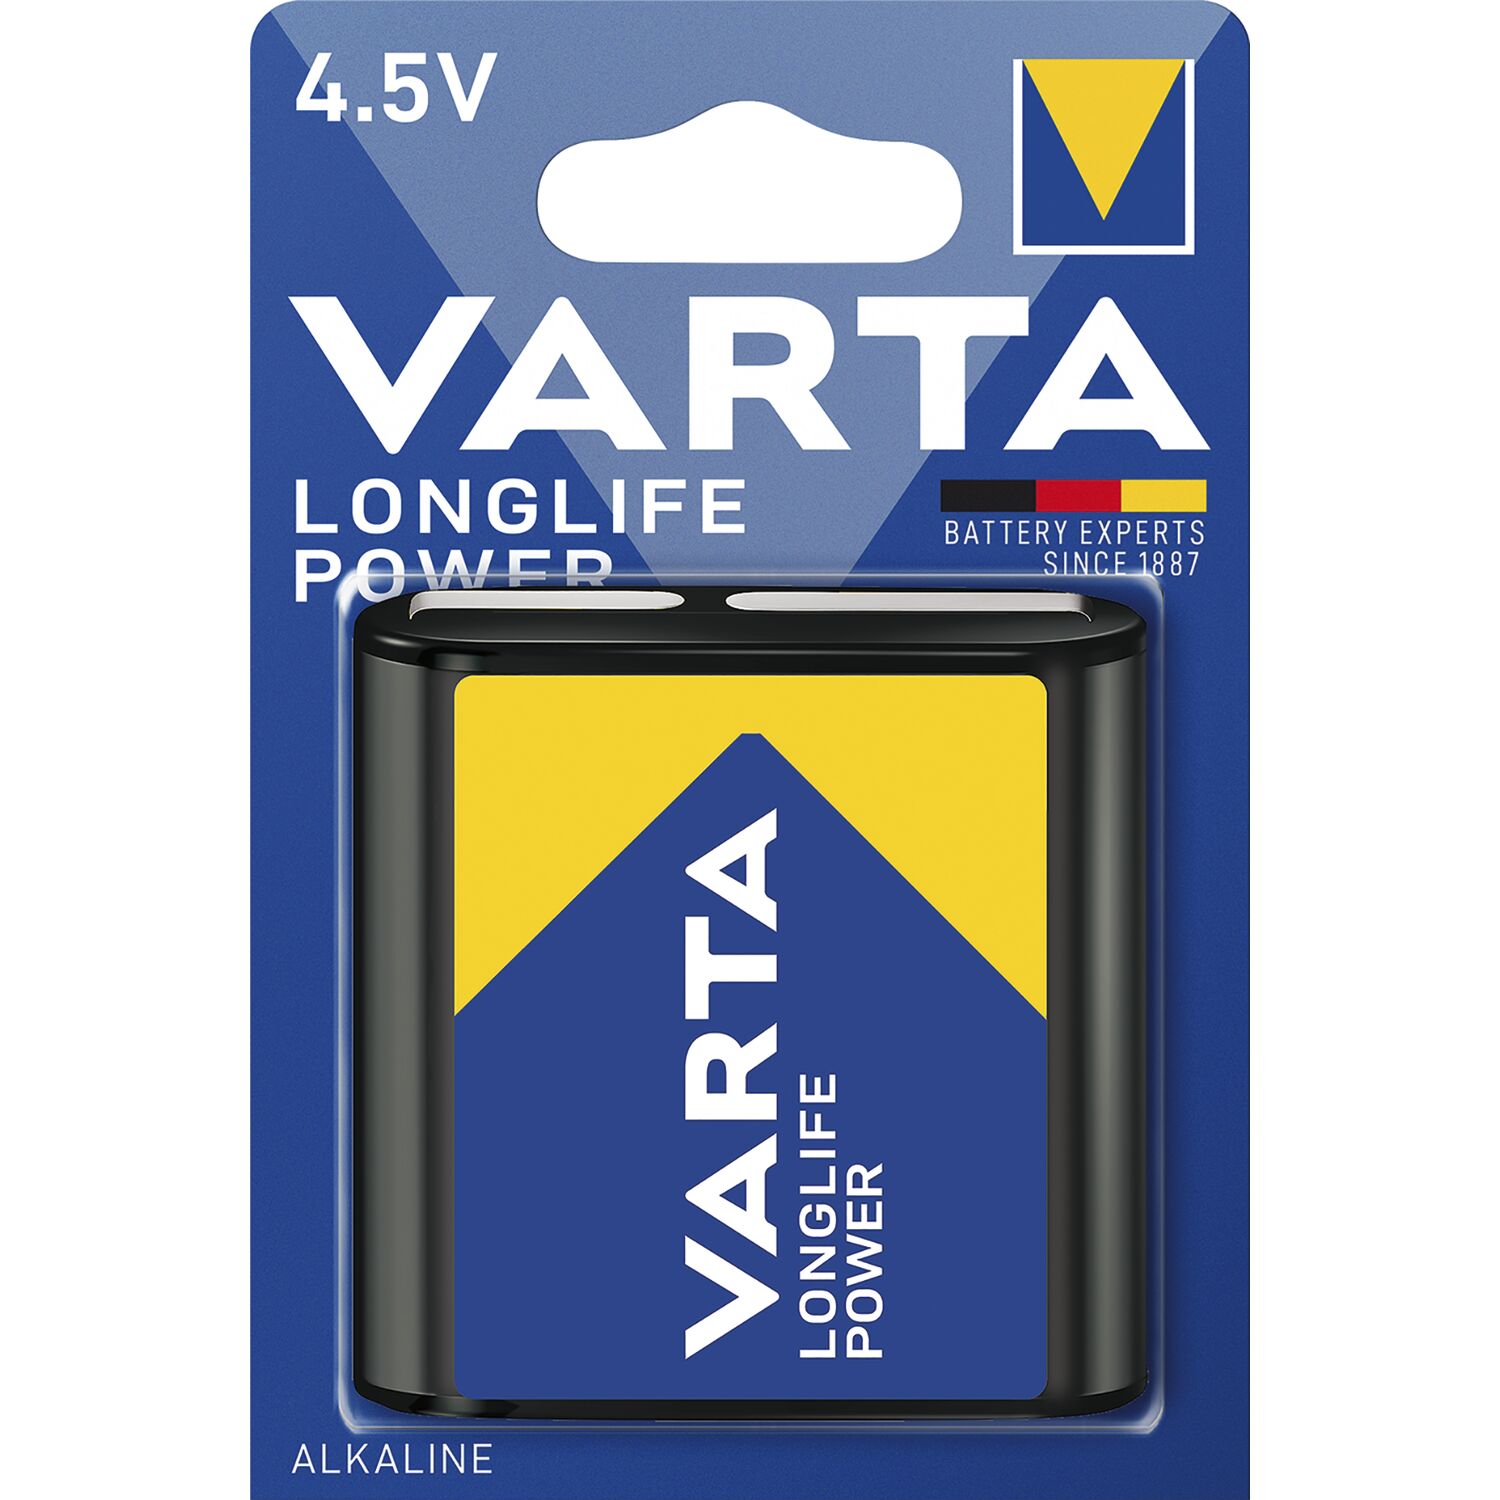 Power 4.5V 3LR12 1 Stück VARTA Longlife Batterie